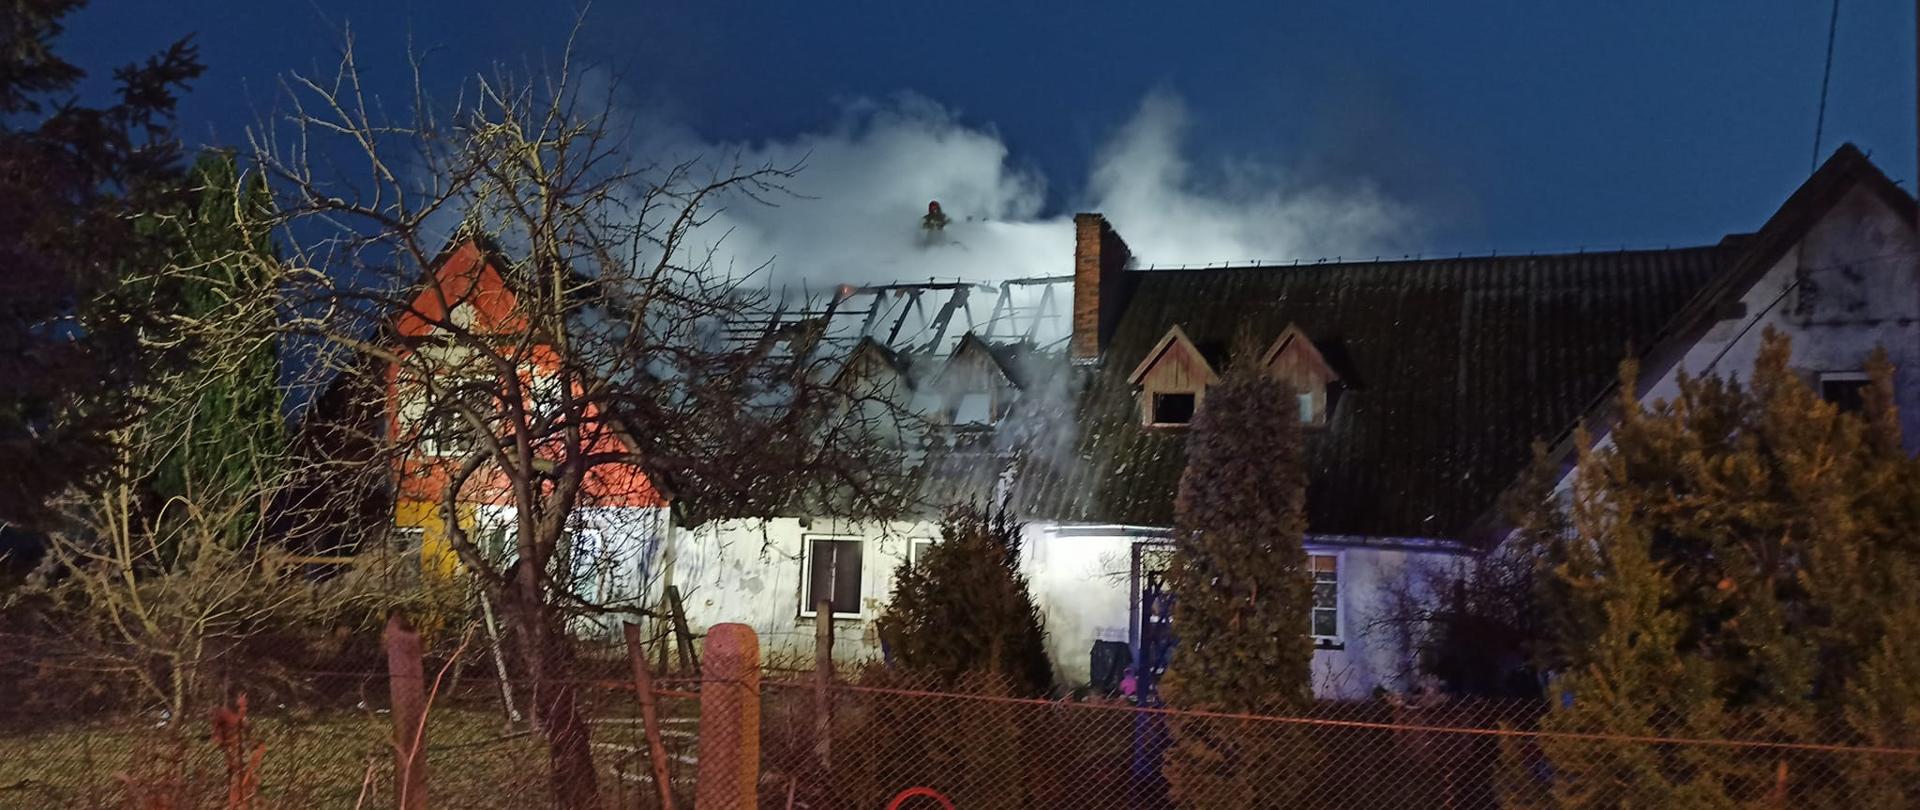 Strażacy gaszą budynek wielorodzinny widać pojazdy ratownicze, dym, mury budynku i spalona konstrukcję dachu